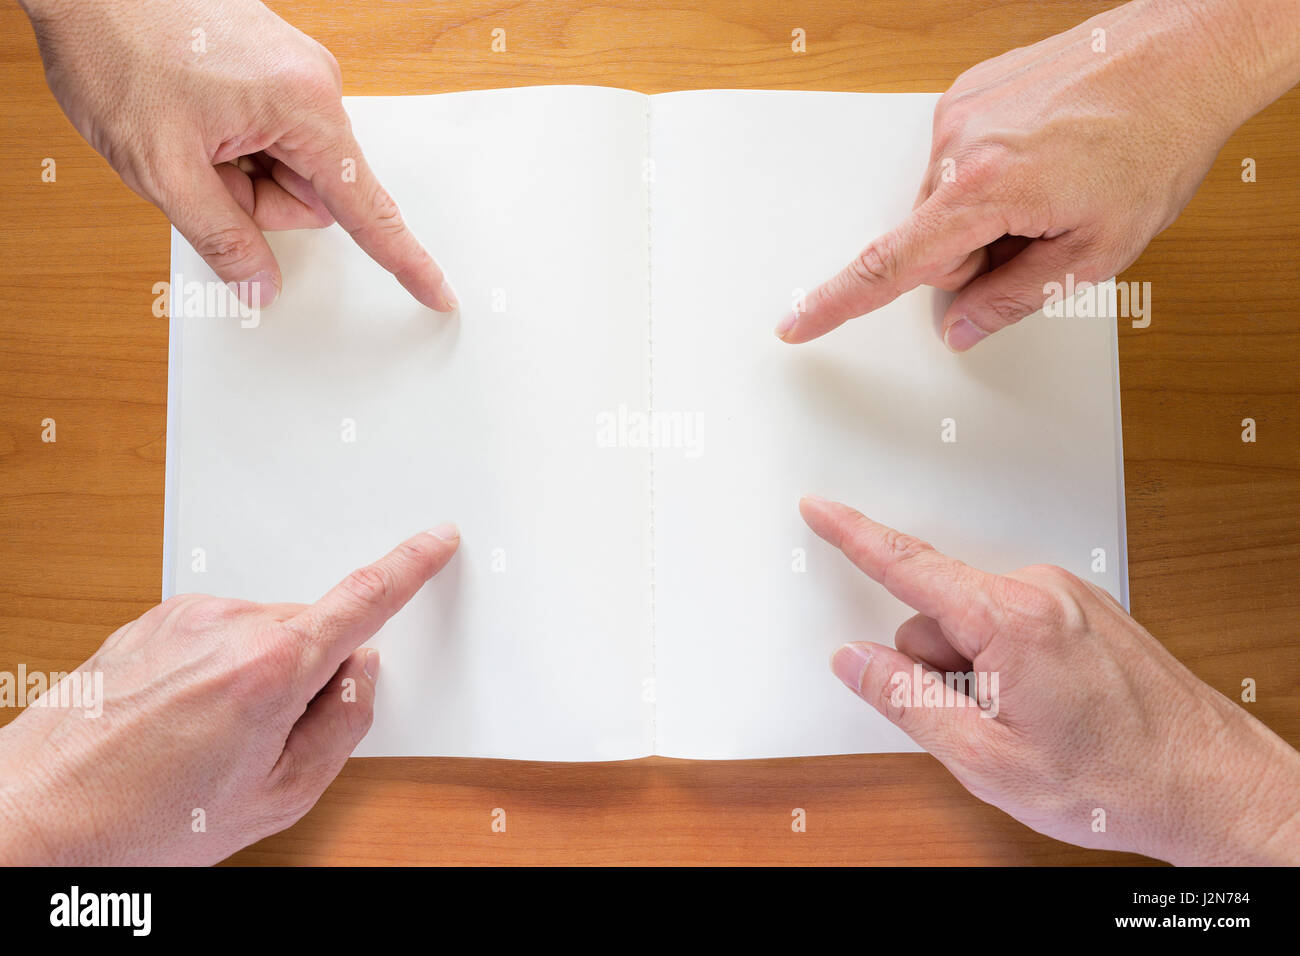 Quatre mains avec finger pointing at blank white paper notebook sur table en bois Banque D'Images